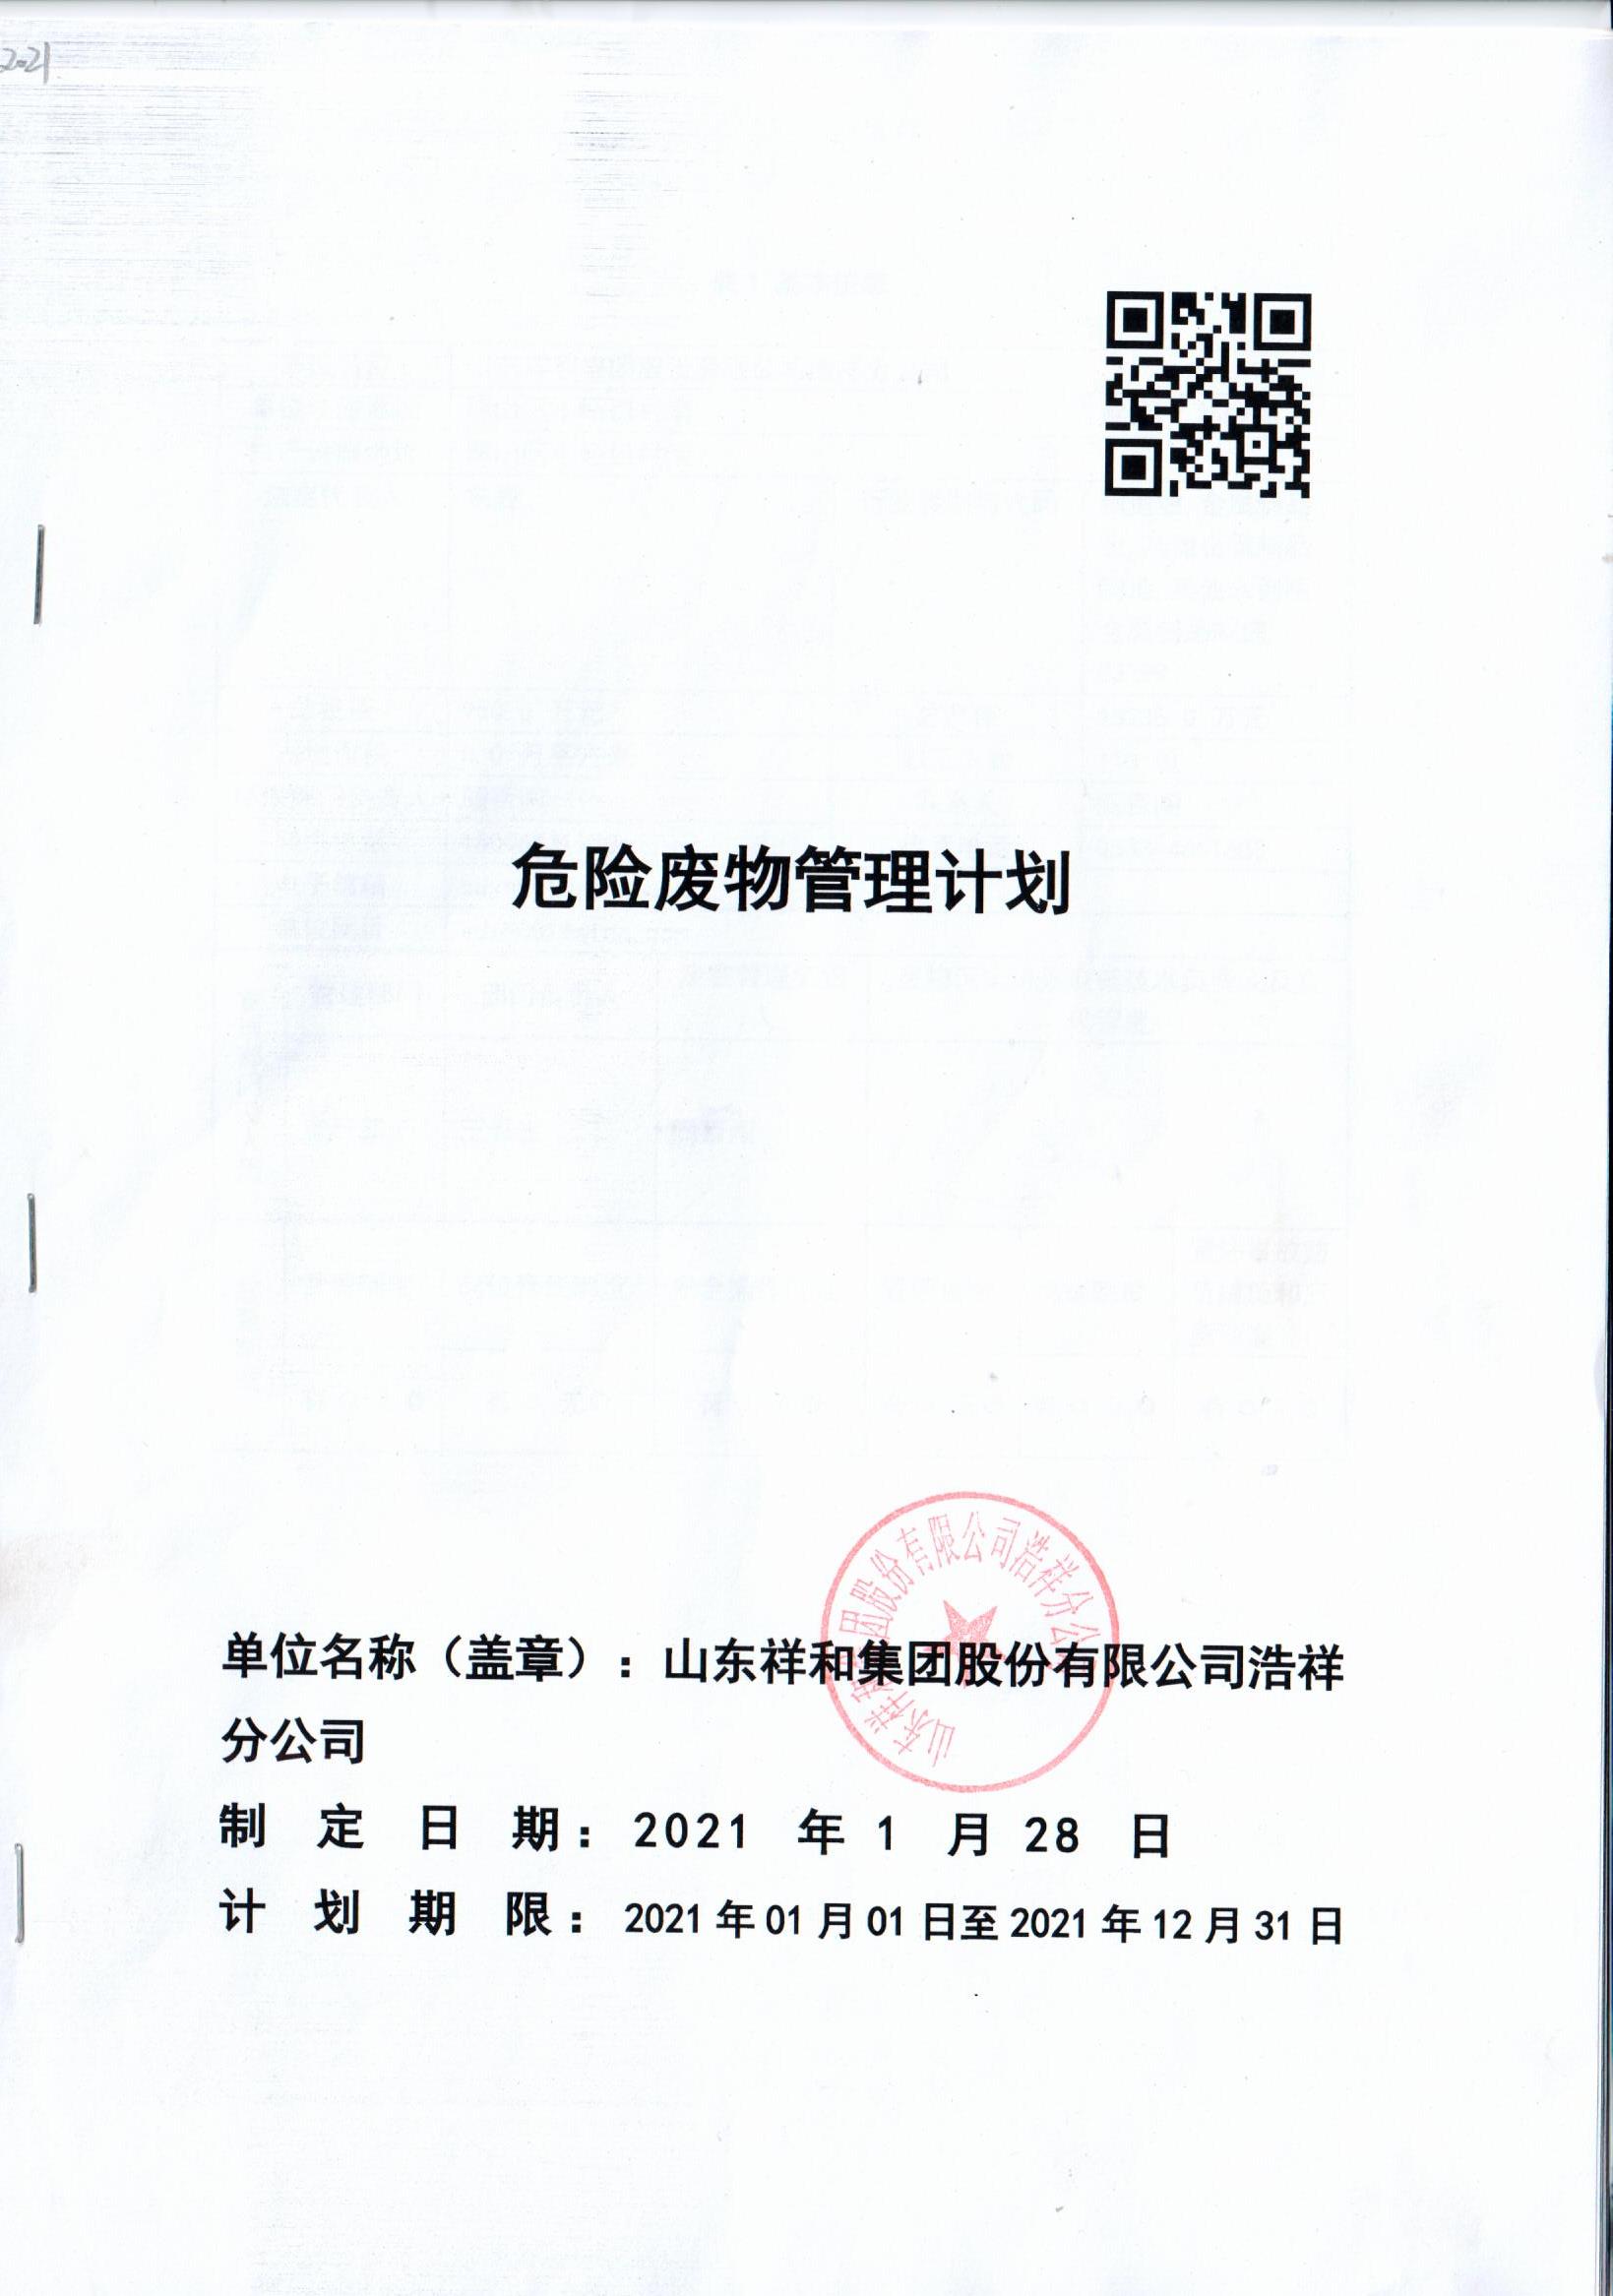 亚美体育(中国)科技有限公司官网浩祥分公司2021年度危险废物管理信息公开